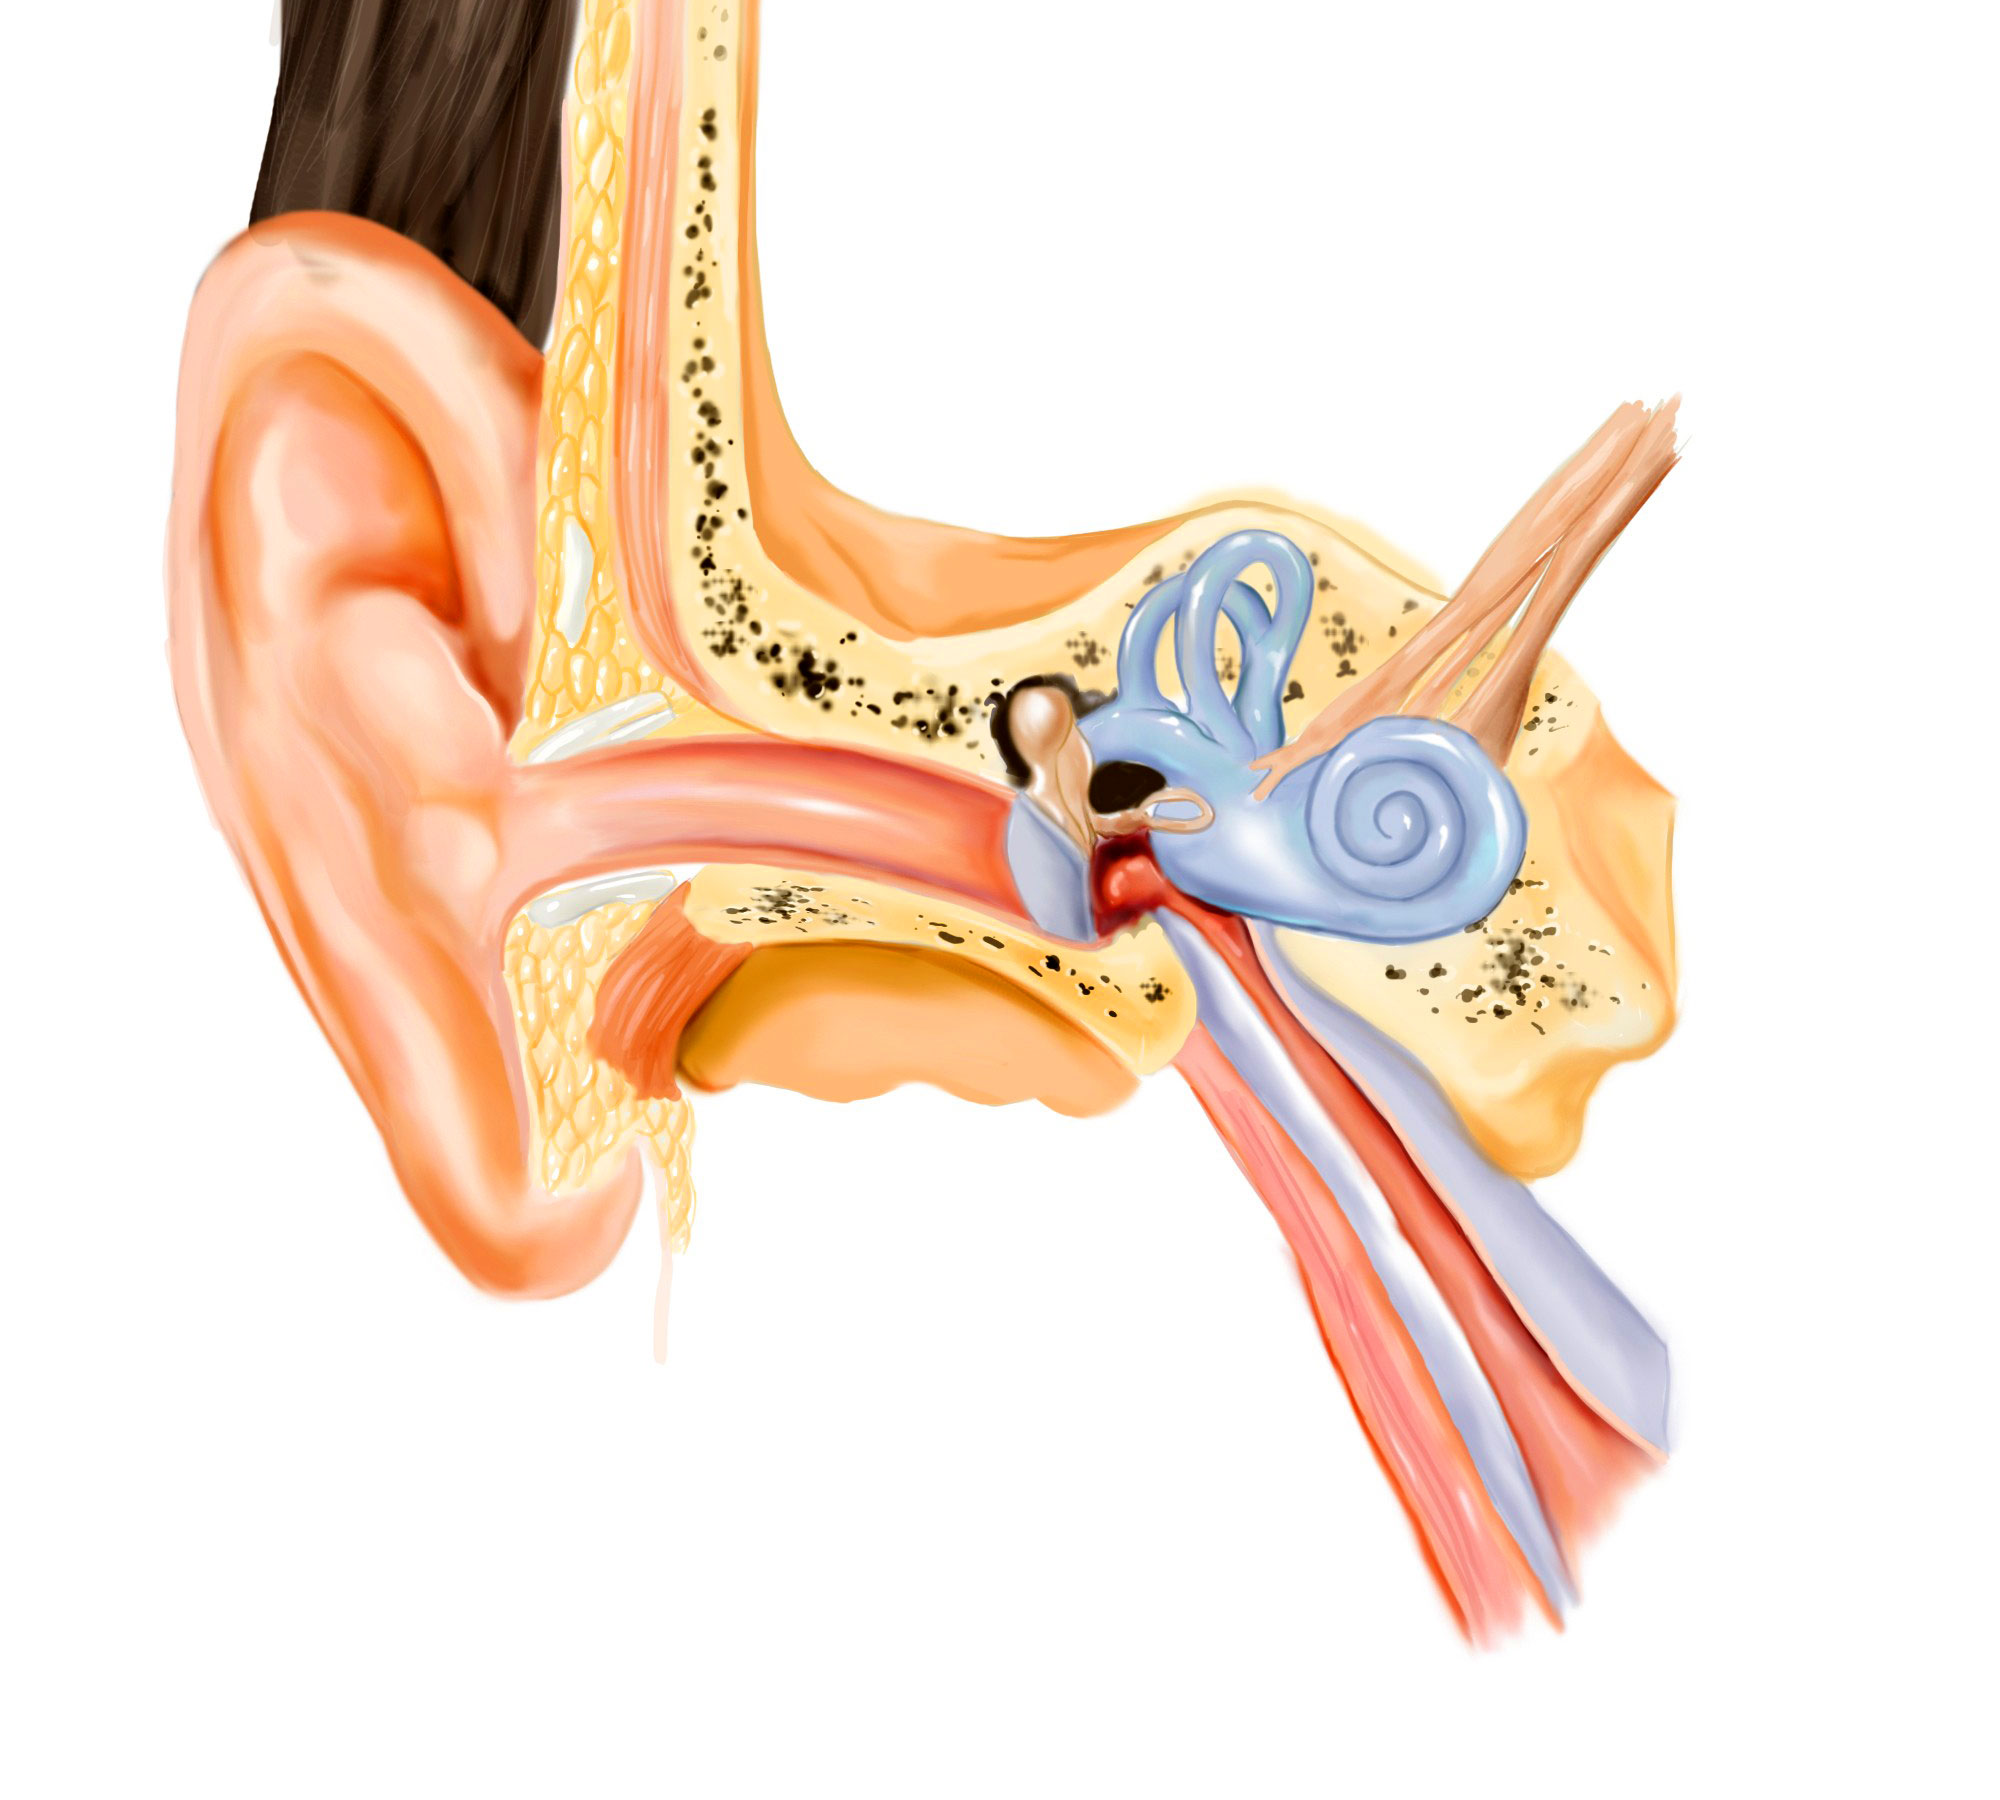 Слуховой тубоотит. Строение уха евстахиева труба. Тубоотит барабанная перепонка. Анатомия уха евстахиева труба.